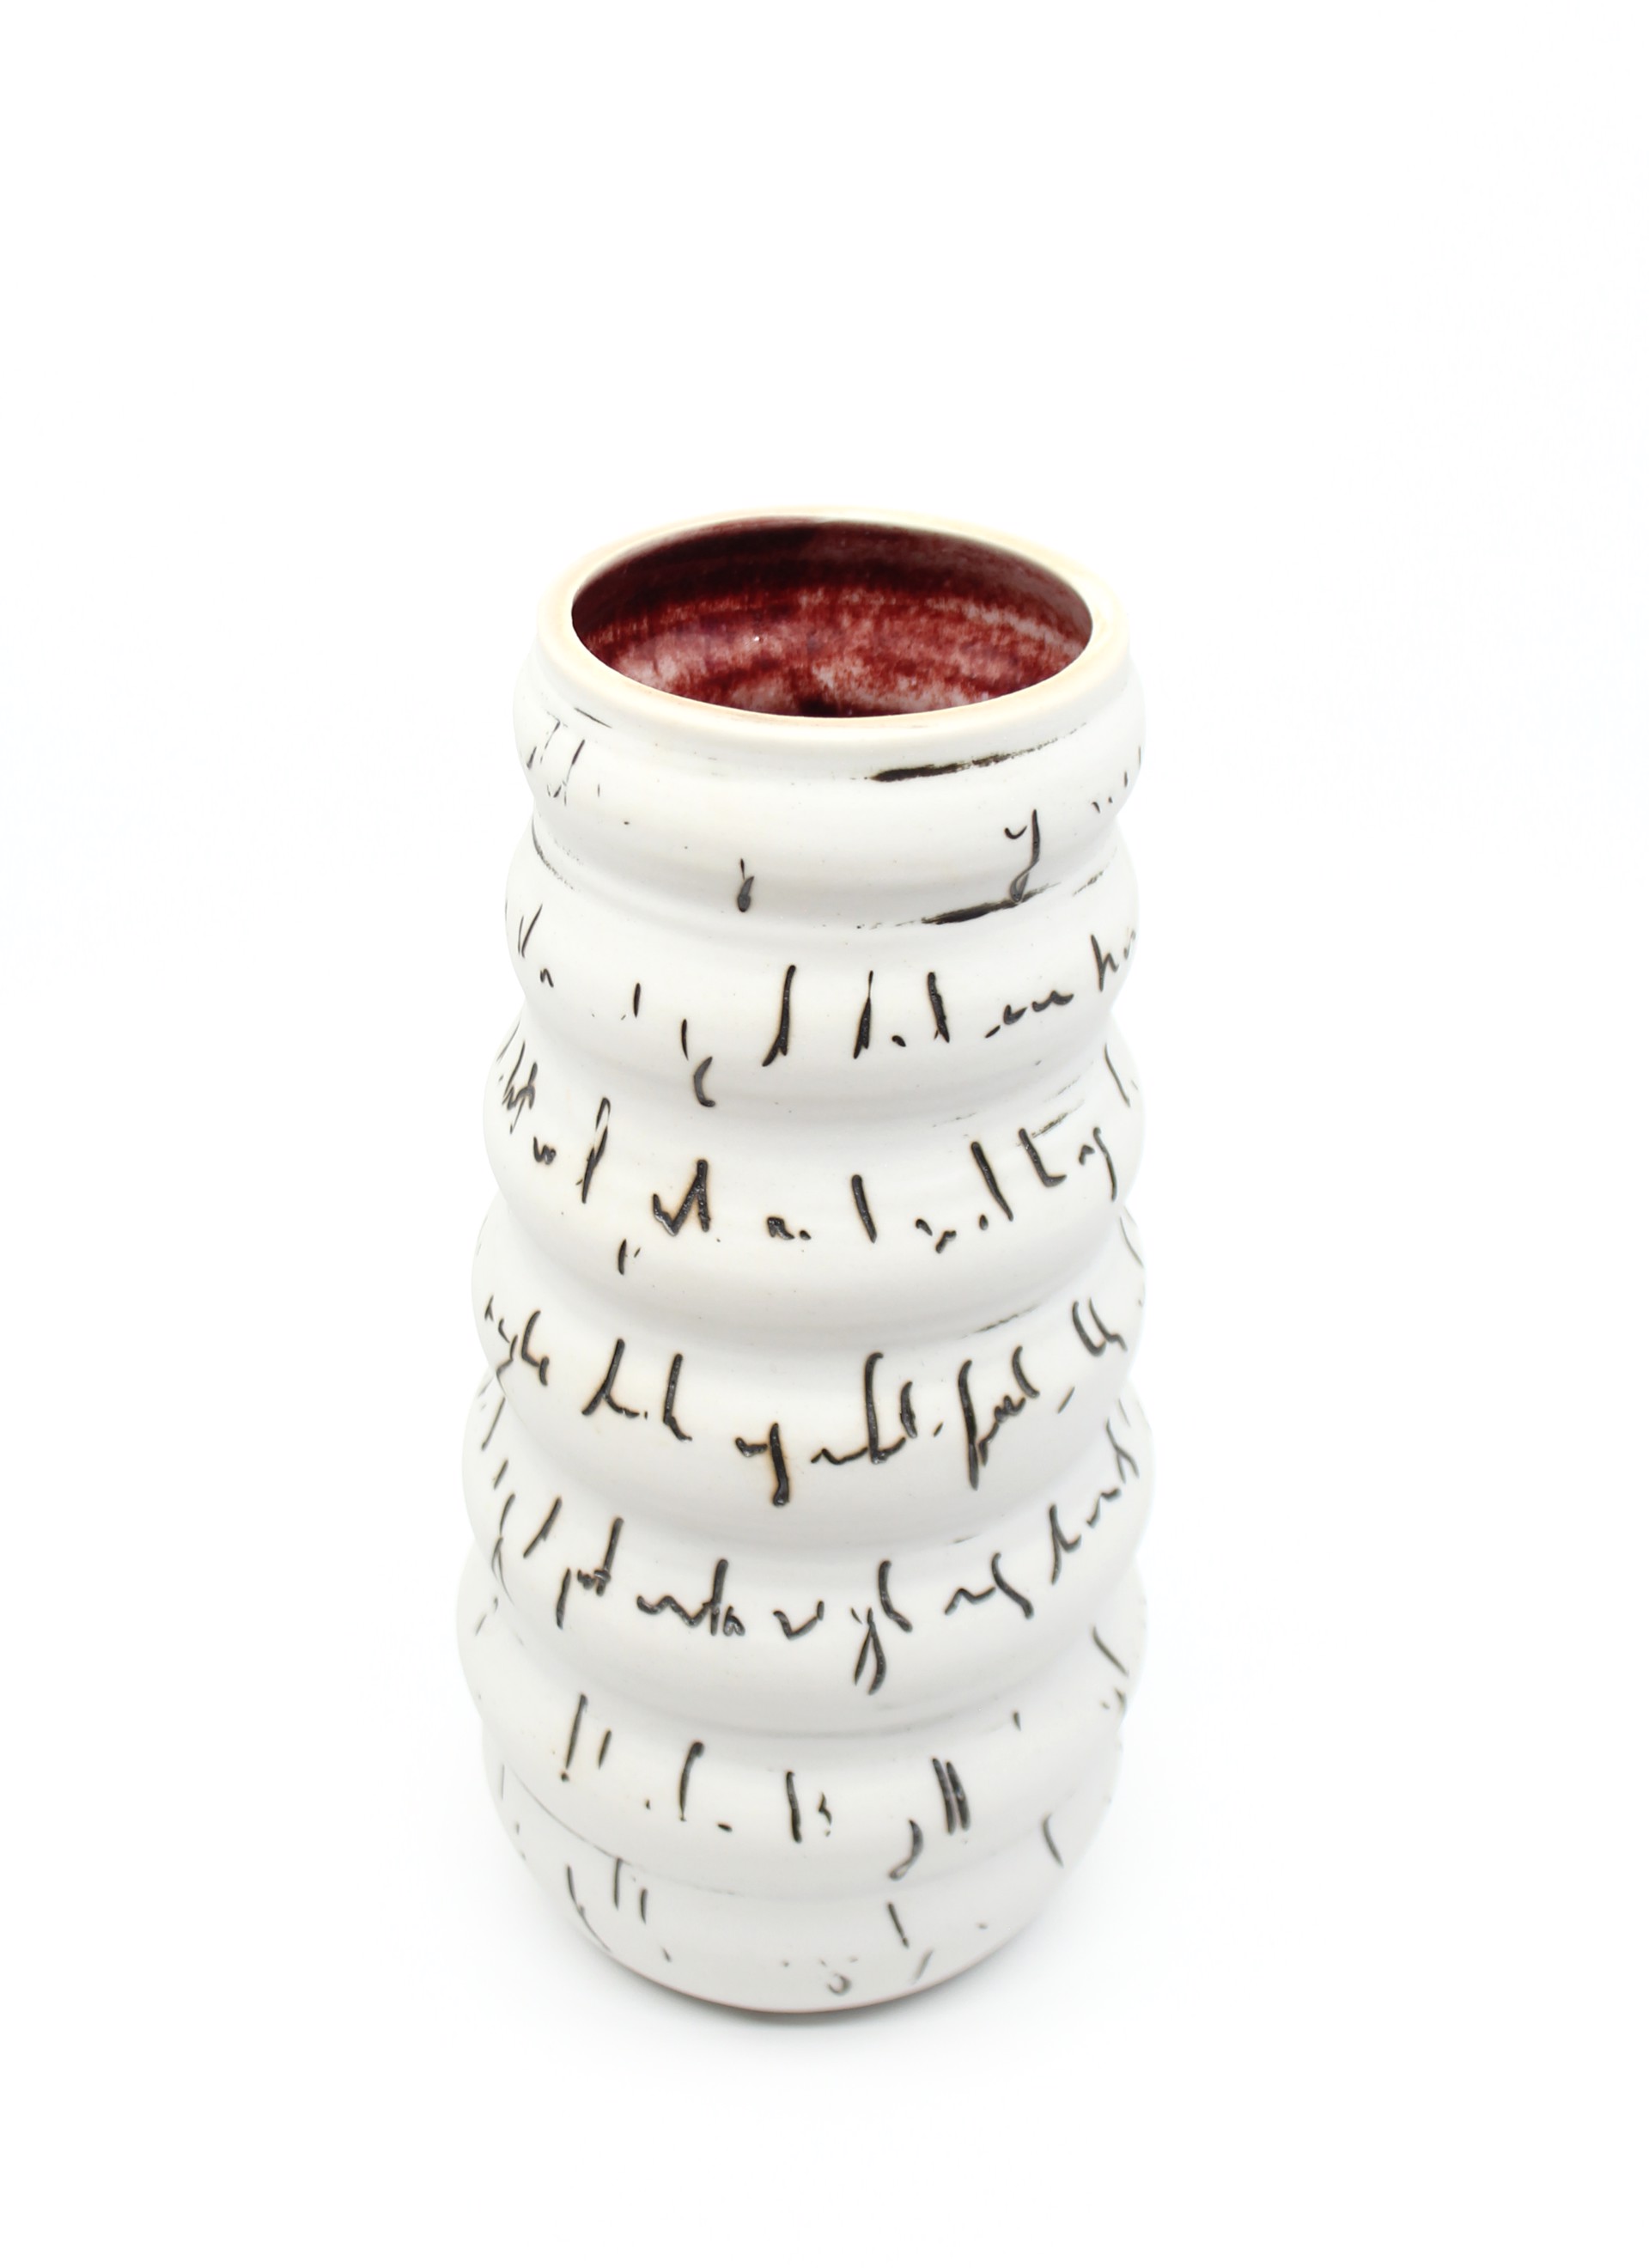 Writing Vase VI by Heather Bradley